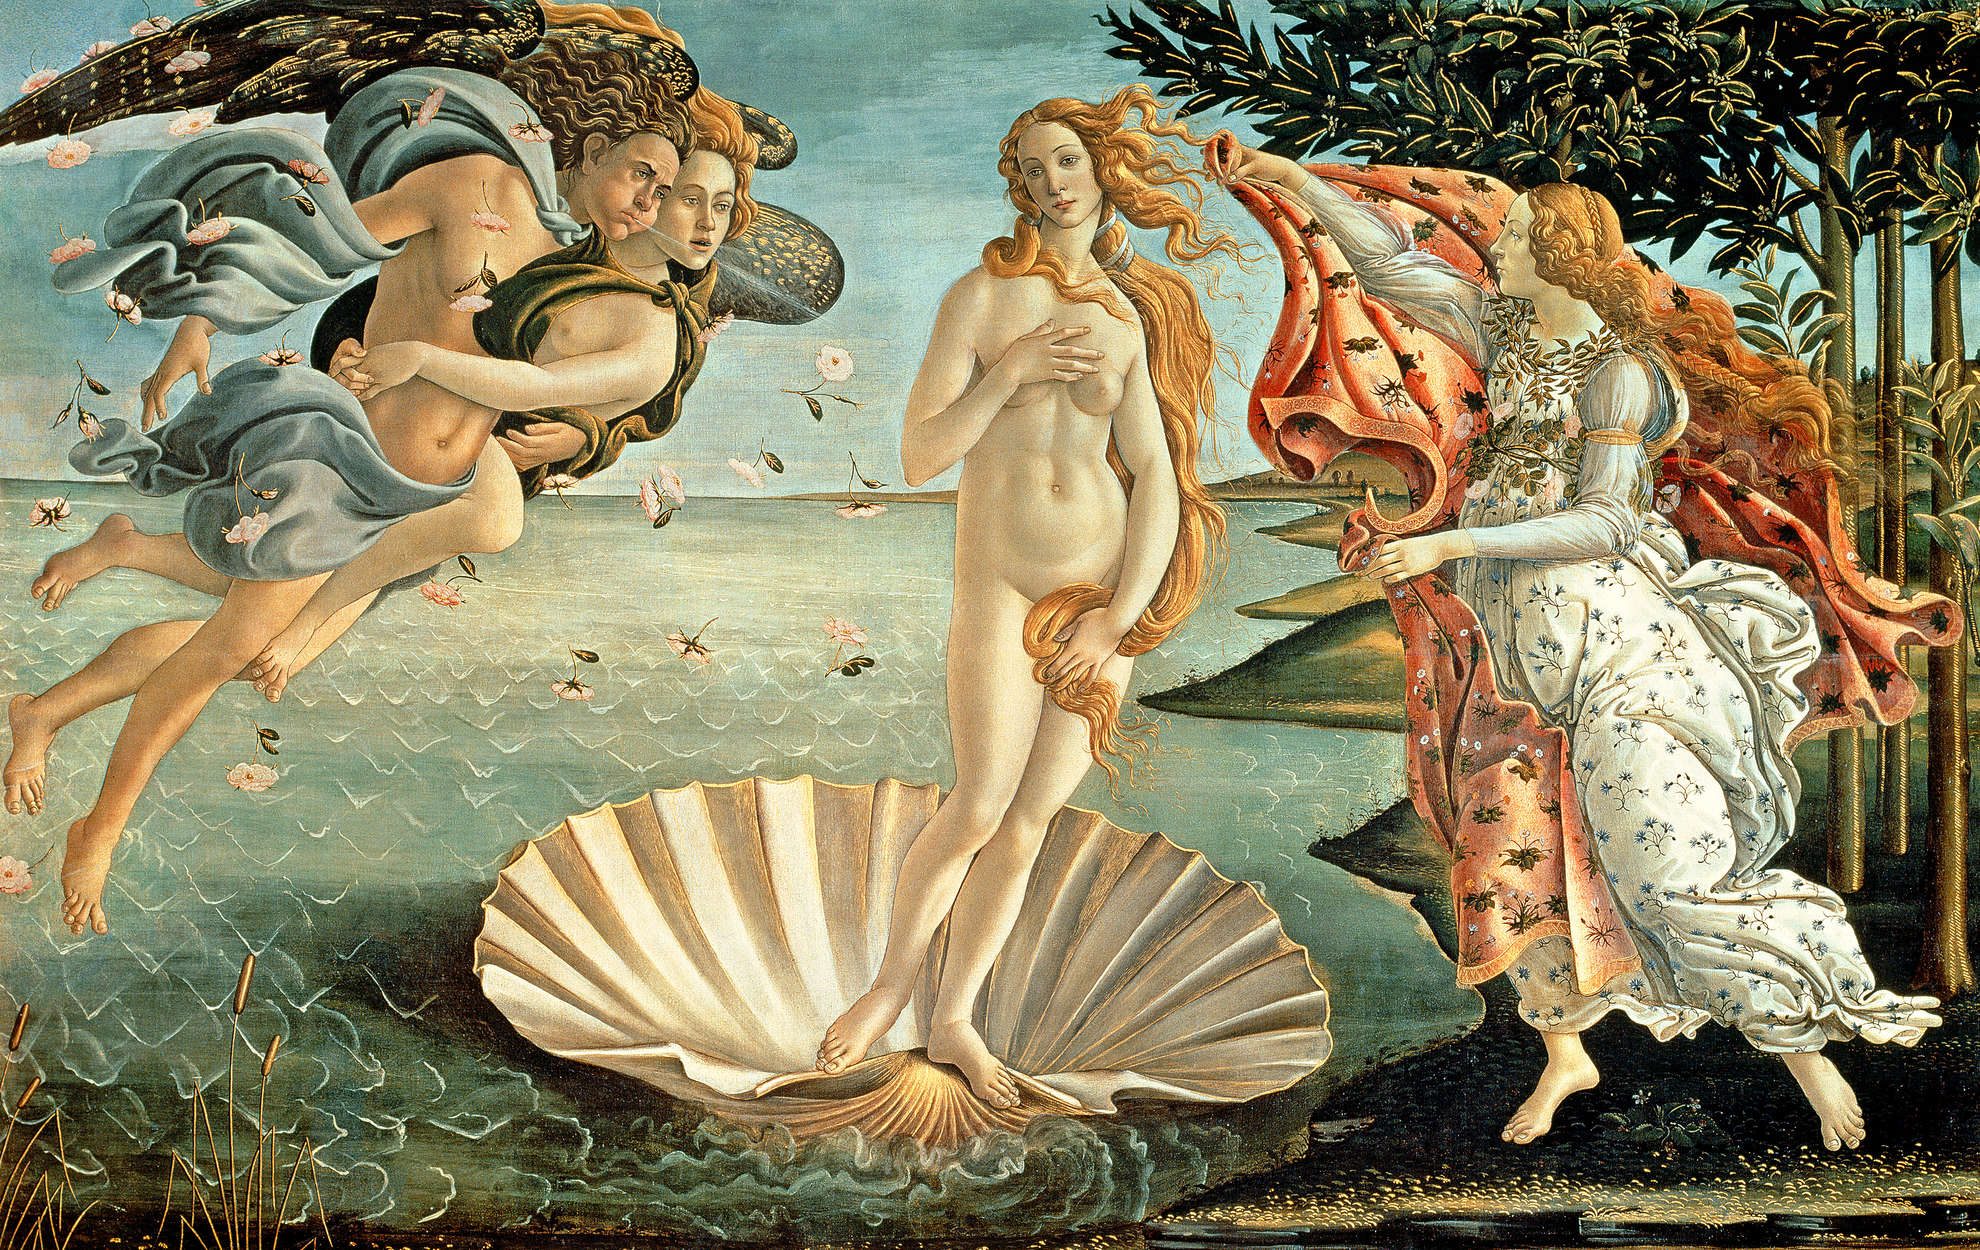             La nascita di Venere" di Sandro Botticelli
        